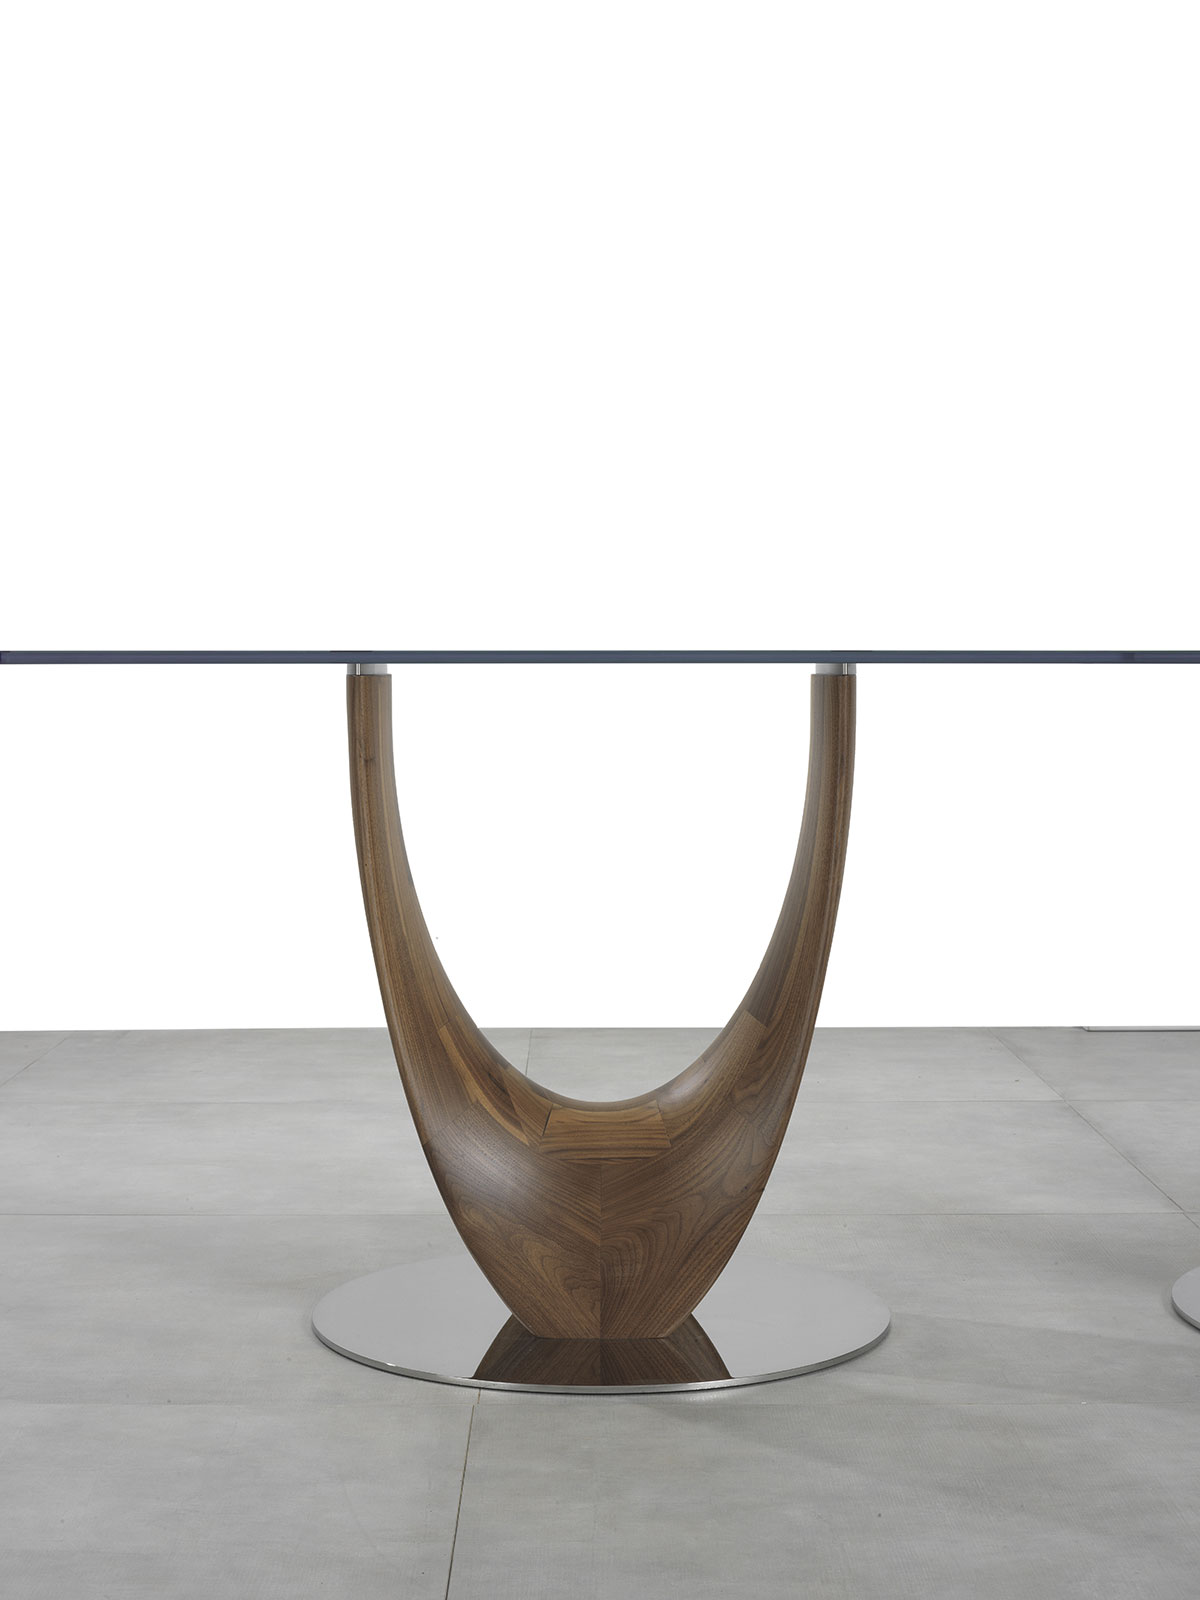 Table de repas ronde avec top en verre et base en bois massif de noyer Canaletto. Design Stefano Bigi. Vente en ligne et livraison gratuite.